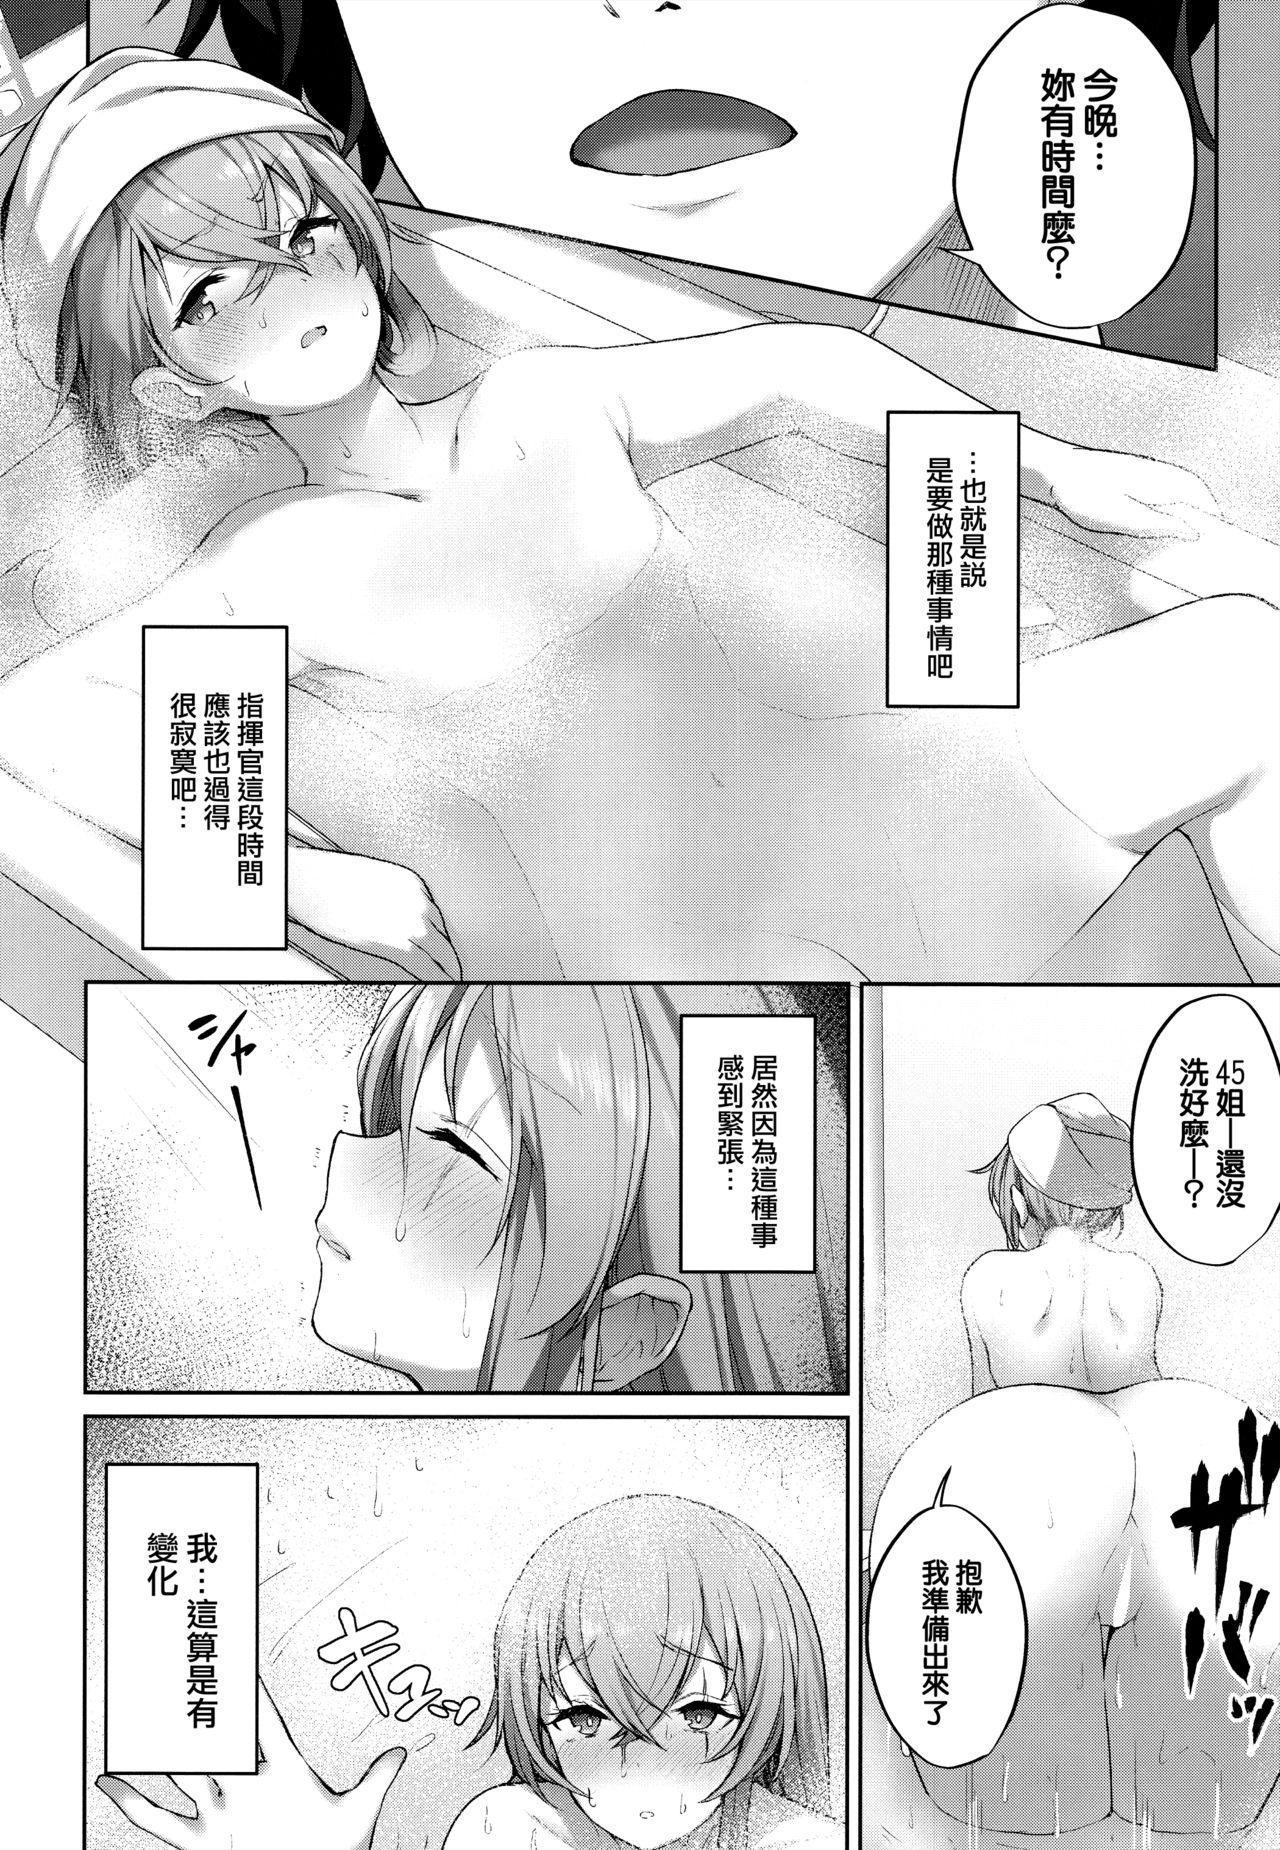 Foursome Shikikan no Sei dakara - Girls frontline Monstercock - Page 5